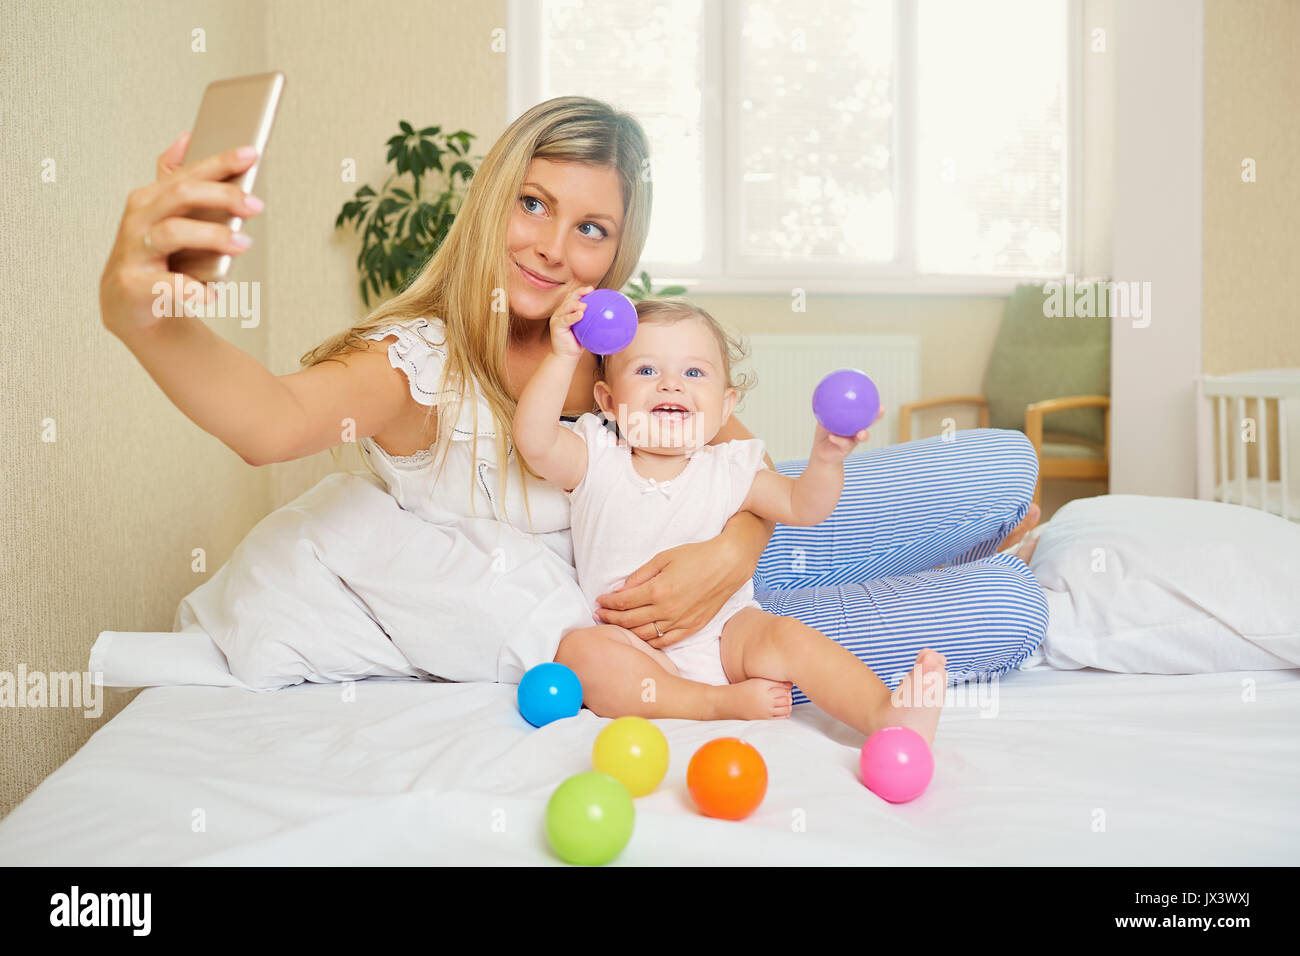 Maman fait une photo sur le téléphone avec le bébé dans la chambre. Salfie Banque D'Images